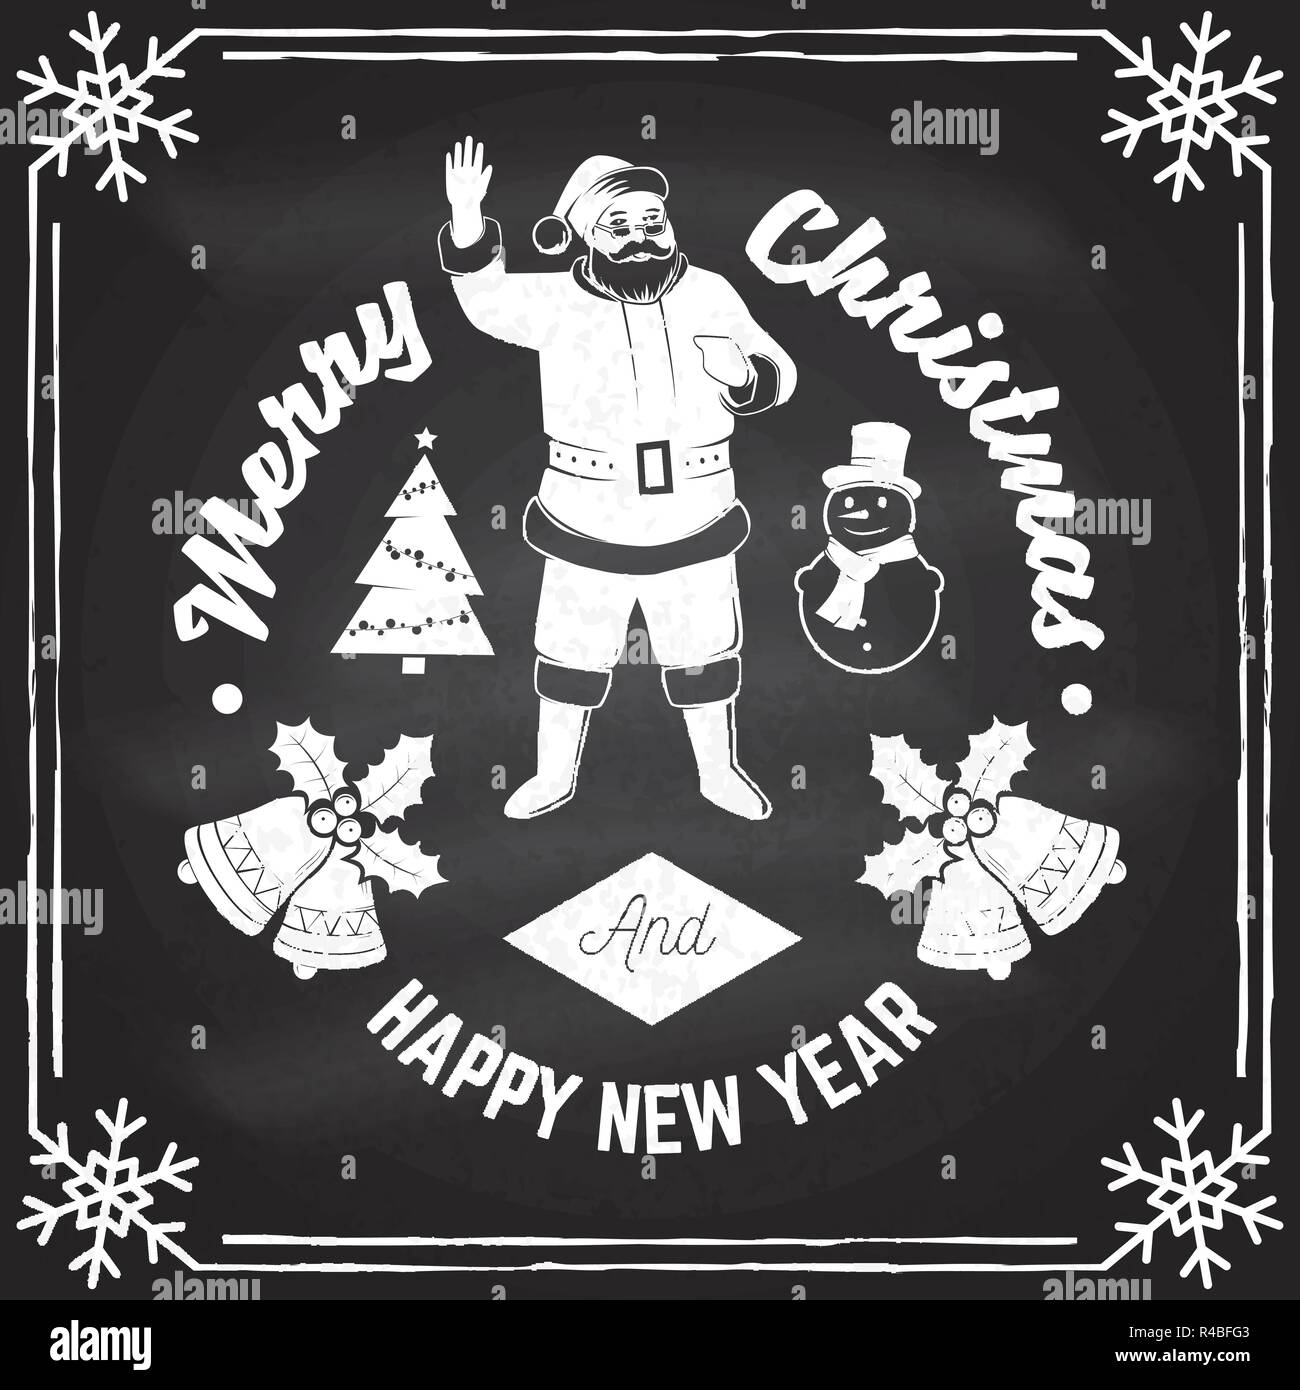 Frohe Weihnachten und ein glückliches Neues Jahr 2018 retro Template mit Santa Claus. Vector Illustration auf dem Schwarzen Brett. Xmas Design für Glückwunsch Karten, Einladungen, Banner und Flyer. Stock Vektor